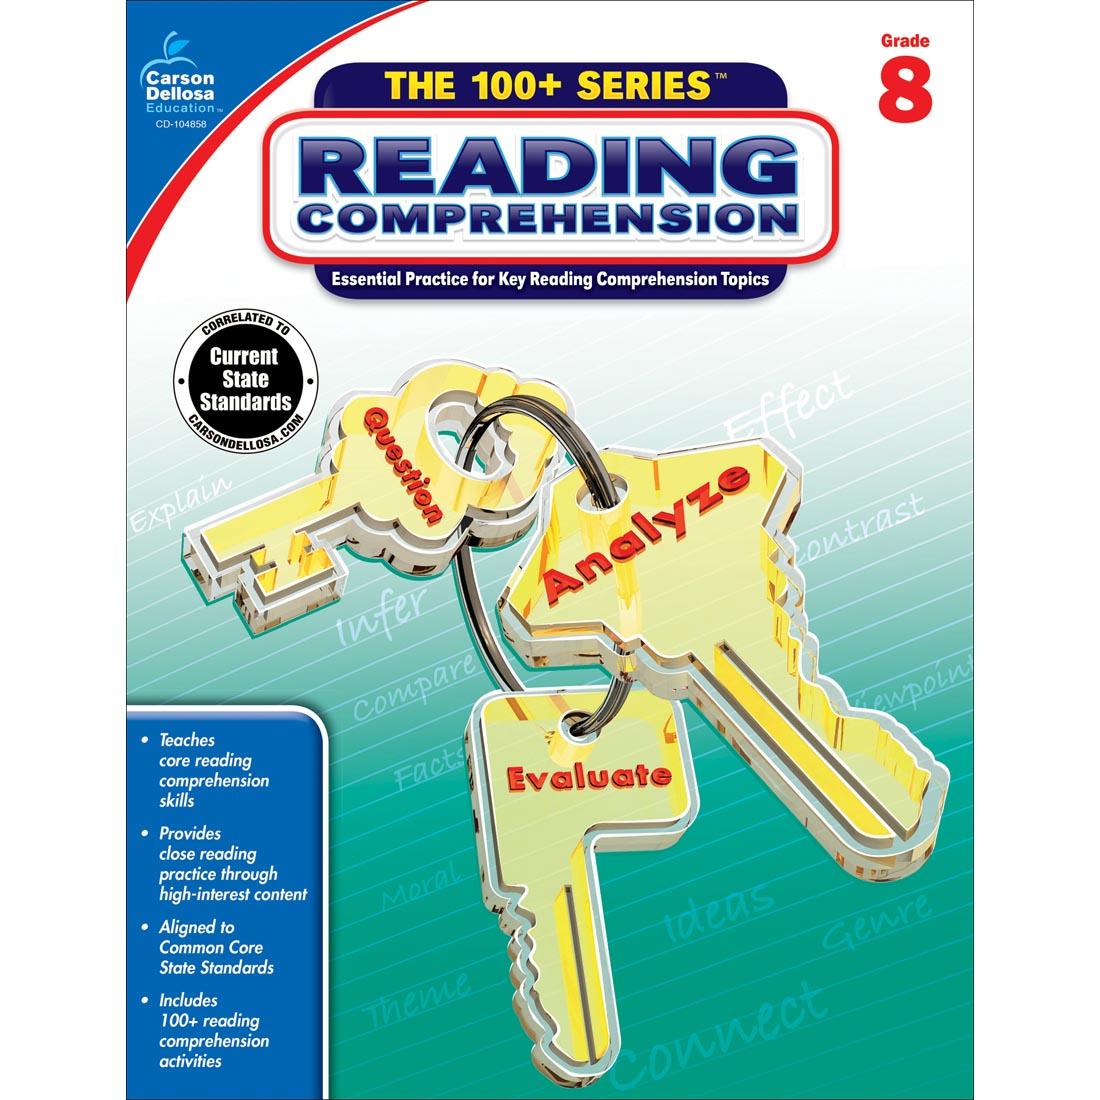 The 100+ Series Reading Comprehension by Carson Dellosa Grade 8